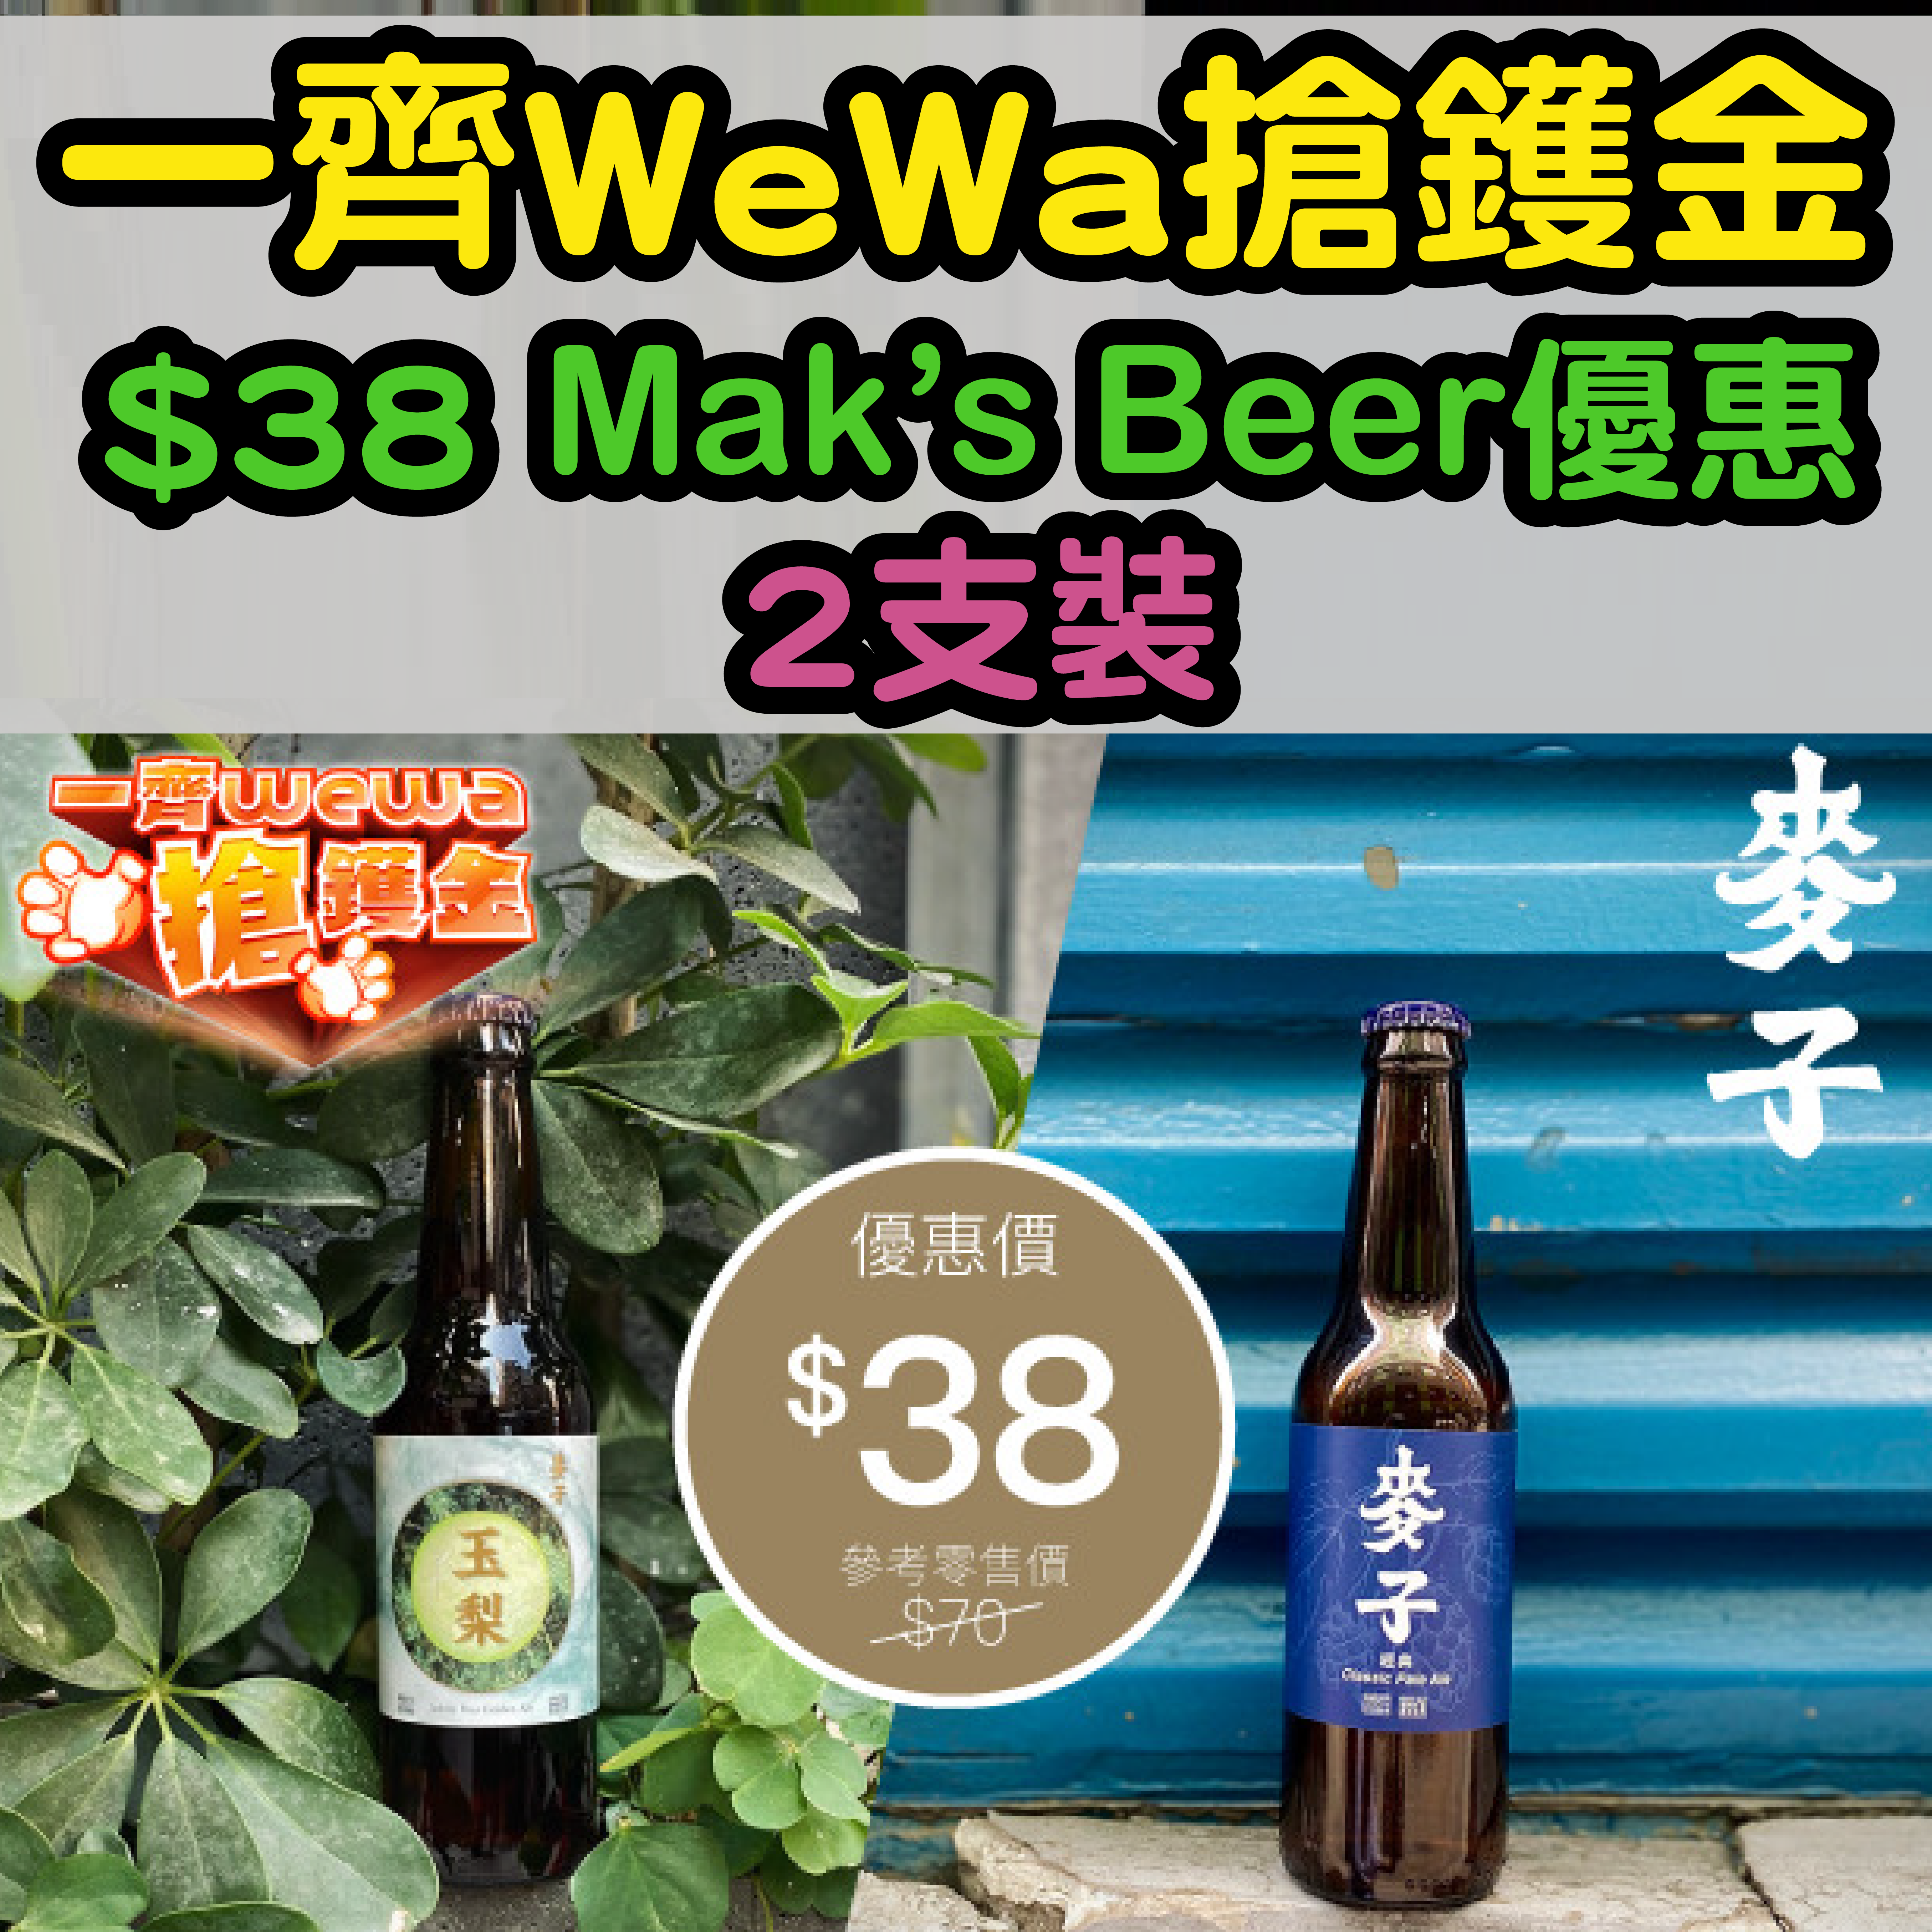 【一齊WeWa搶鑊金】5月21日12:00記得搶！安信EarnMORE / 安信WeWa卡 HK$38 Mak’s Beer優惠2支裝！